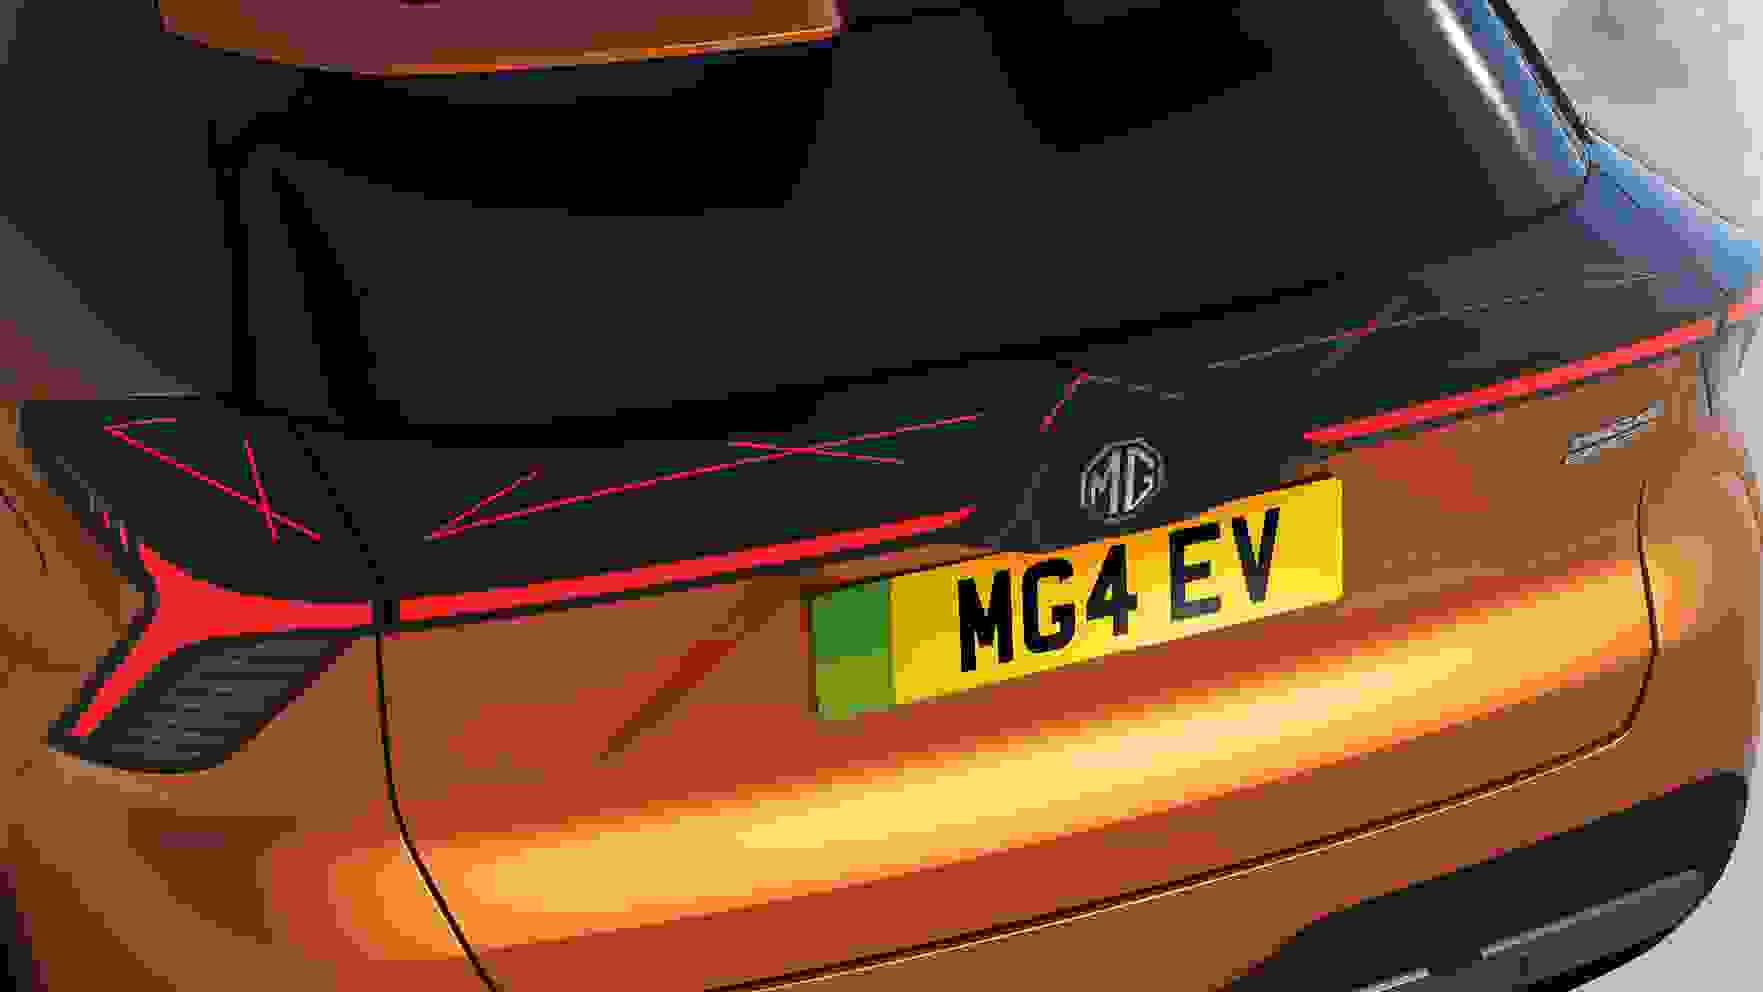 MG4 EV